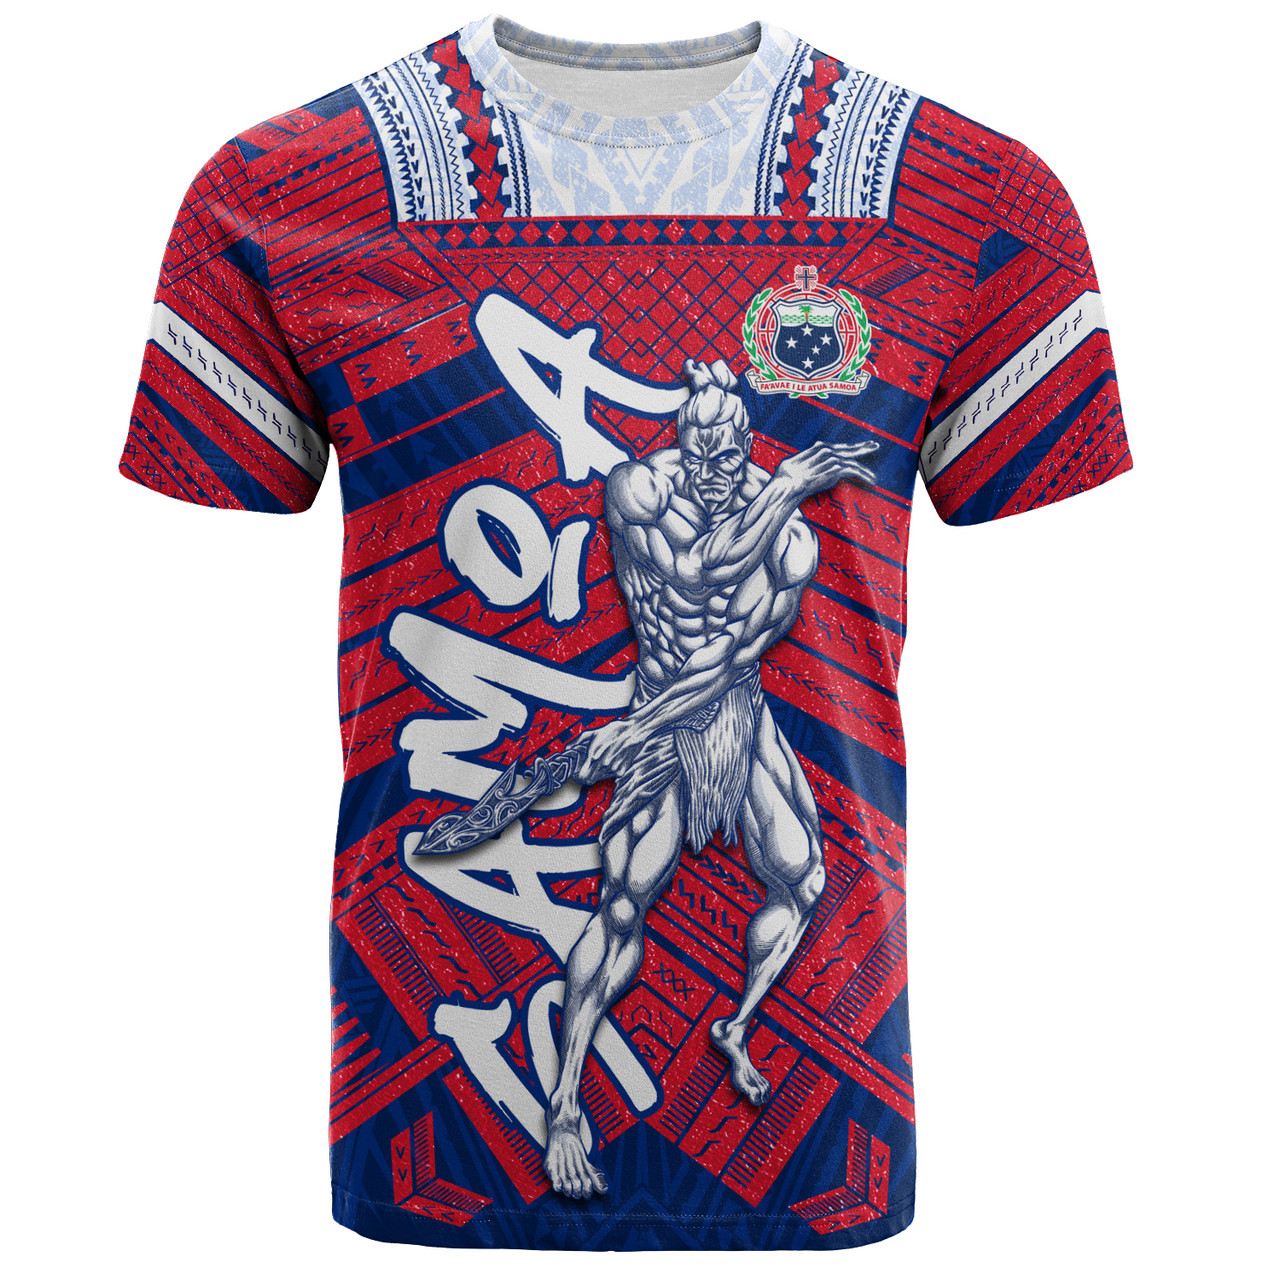 Samoa T-Shirt Samoa Warrior Tribal Pattern